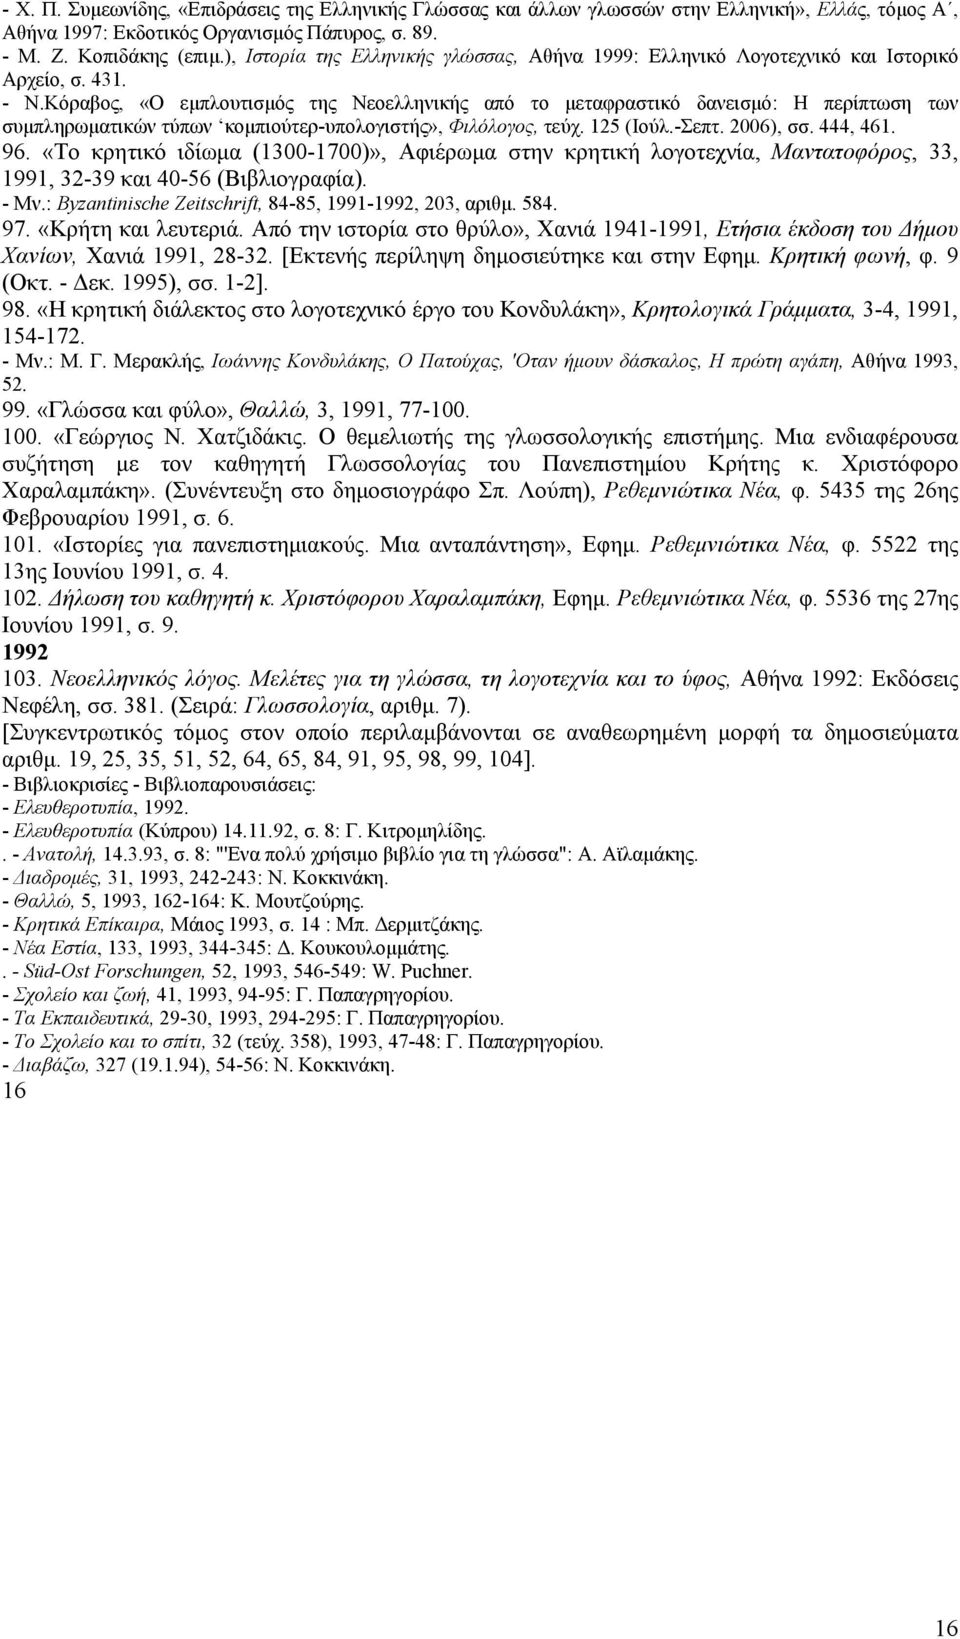 Κόραβος, «Ο εμπλουτισμός της Νεοελληνικής από το μεταφραστικό δανεισμό: Η περίπτωση των συμπληρωματικών τύπων κομπιούτερ-υπολογιστής», Φιλόλογος, τεύχ. 125 (Ιούλ.-Σεπτ. 2006), σσ. 444, 461. 96.